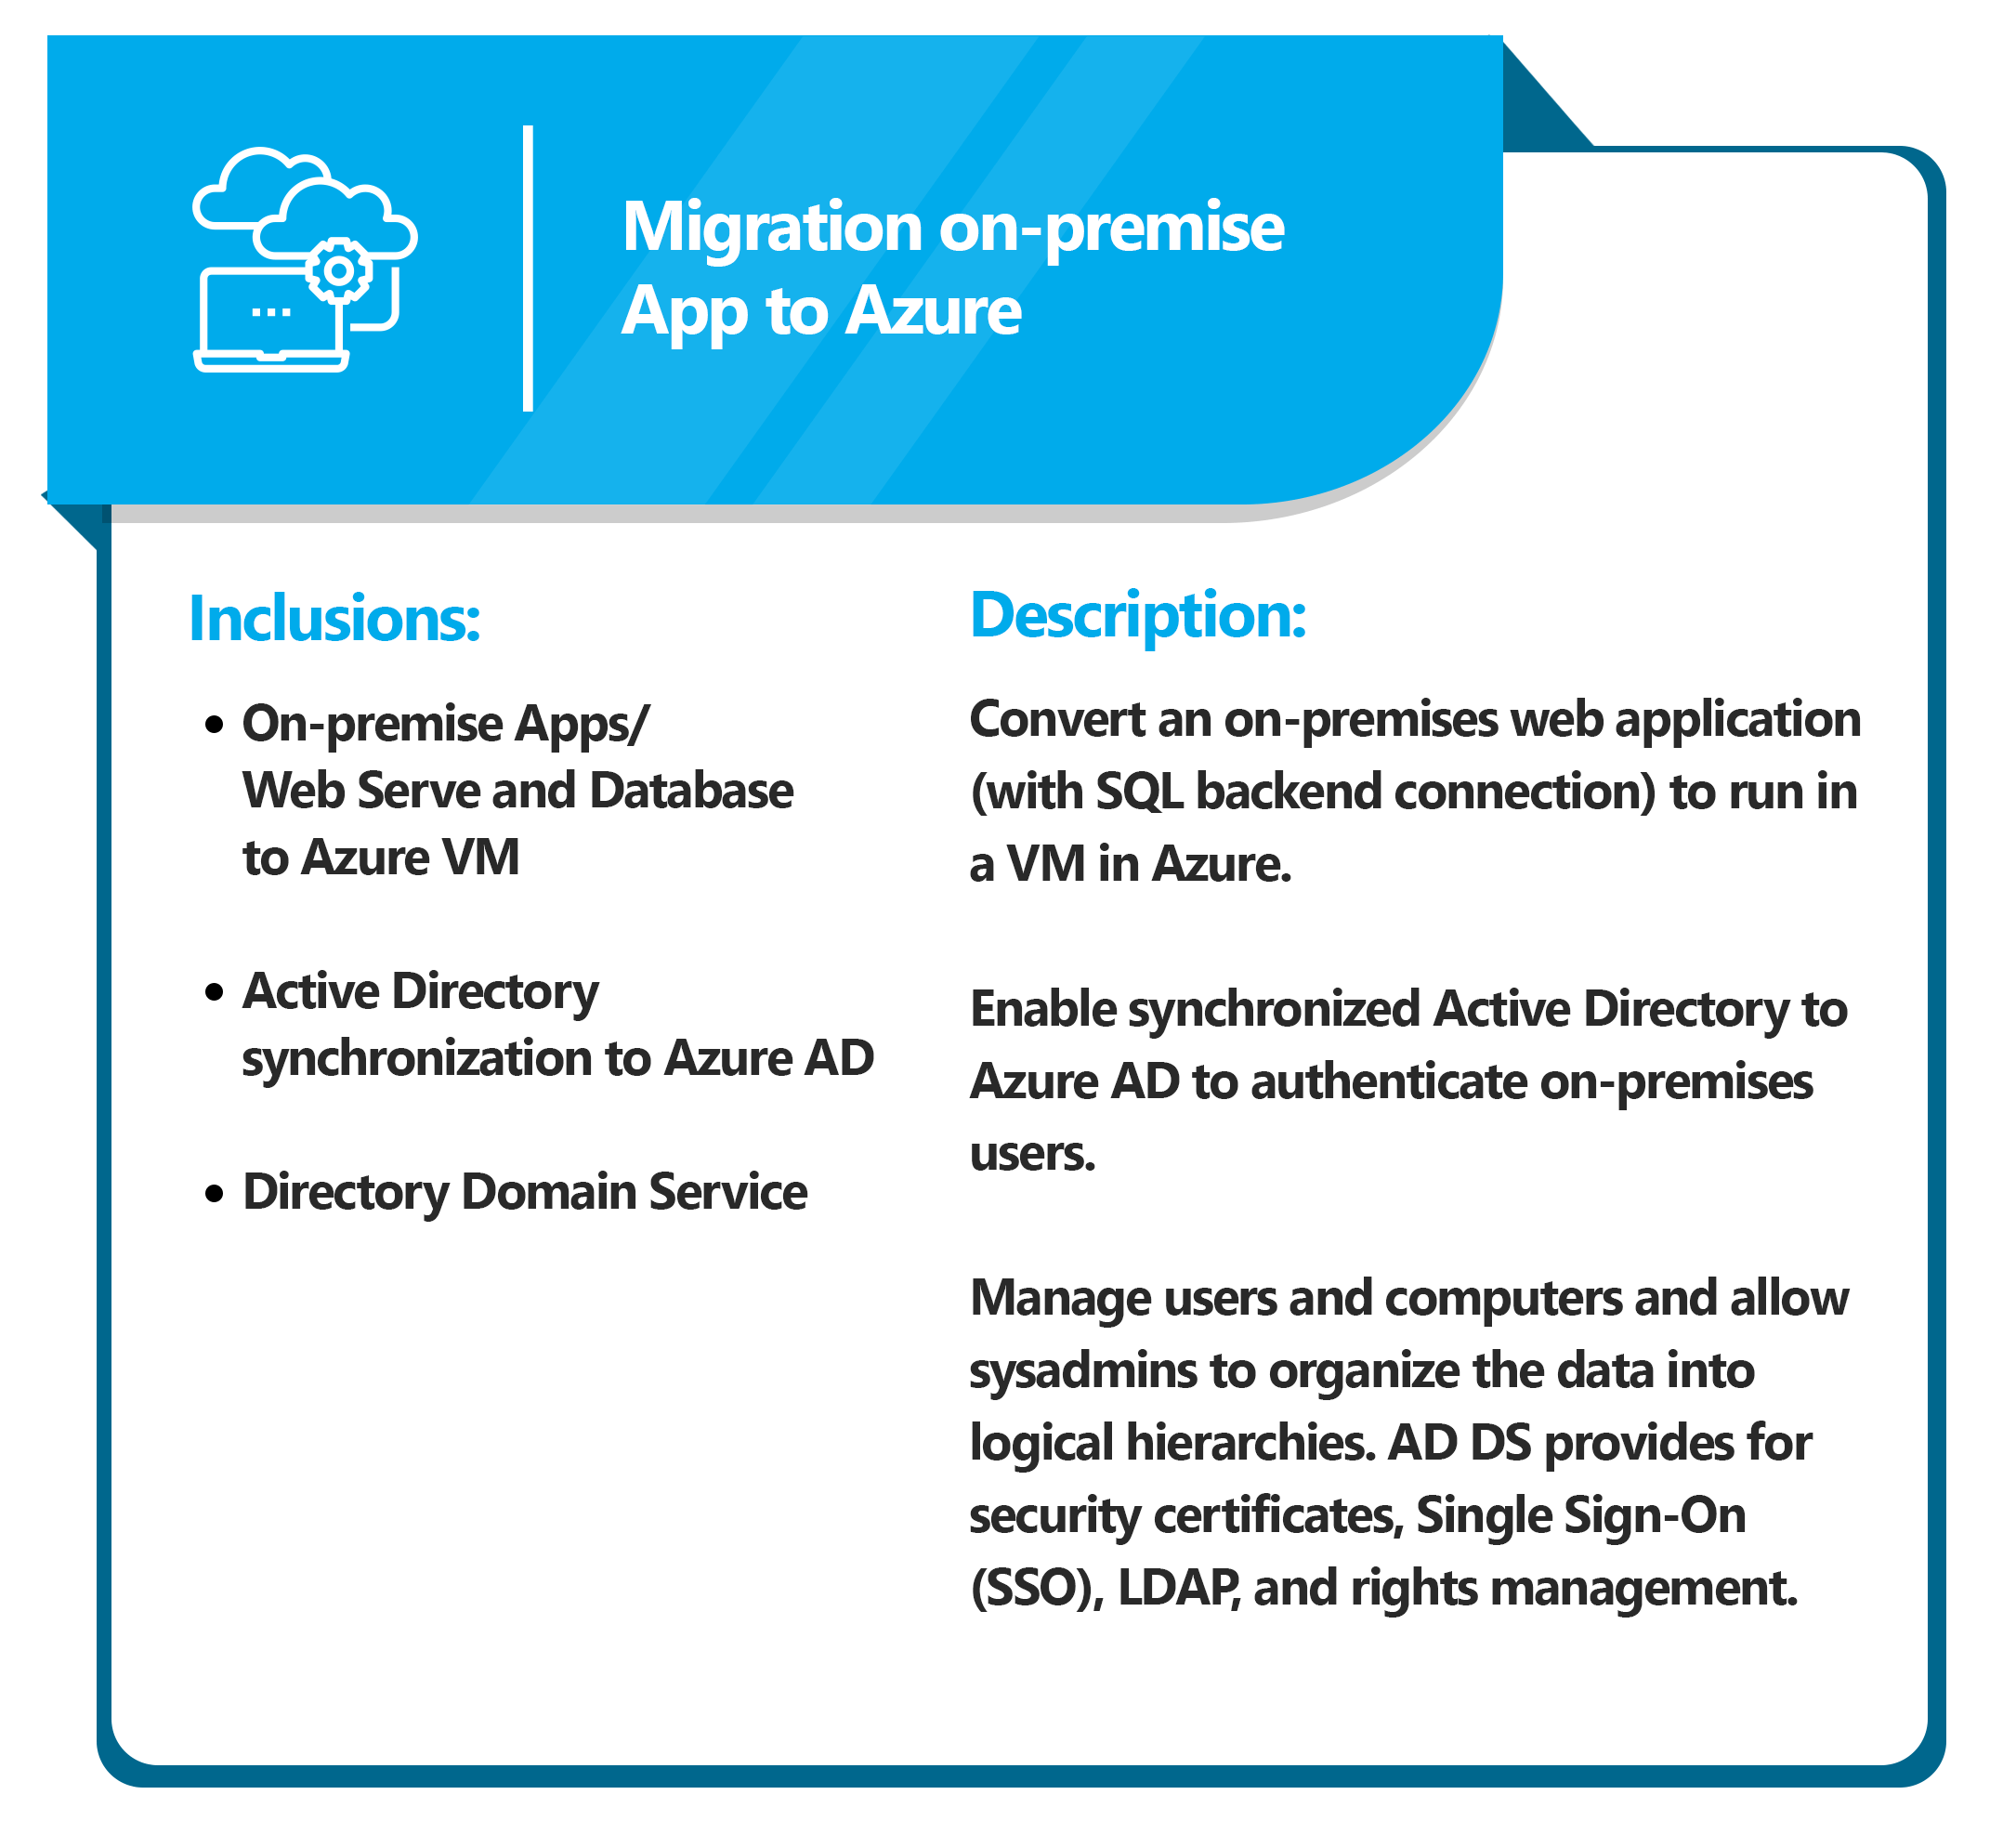 Migration on-premise App to Azure